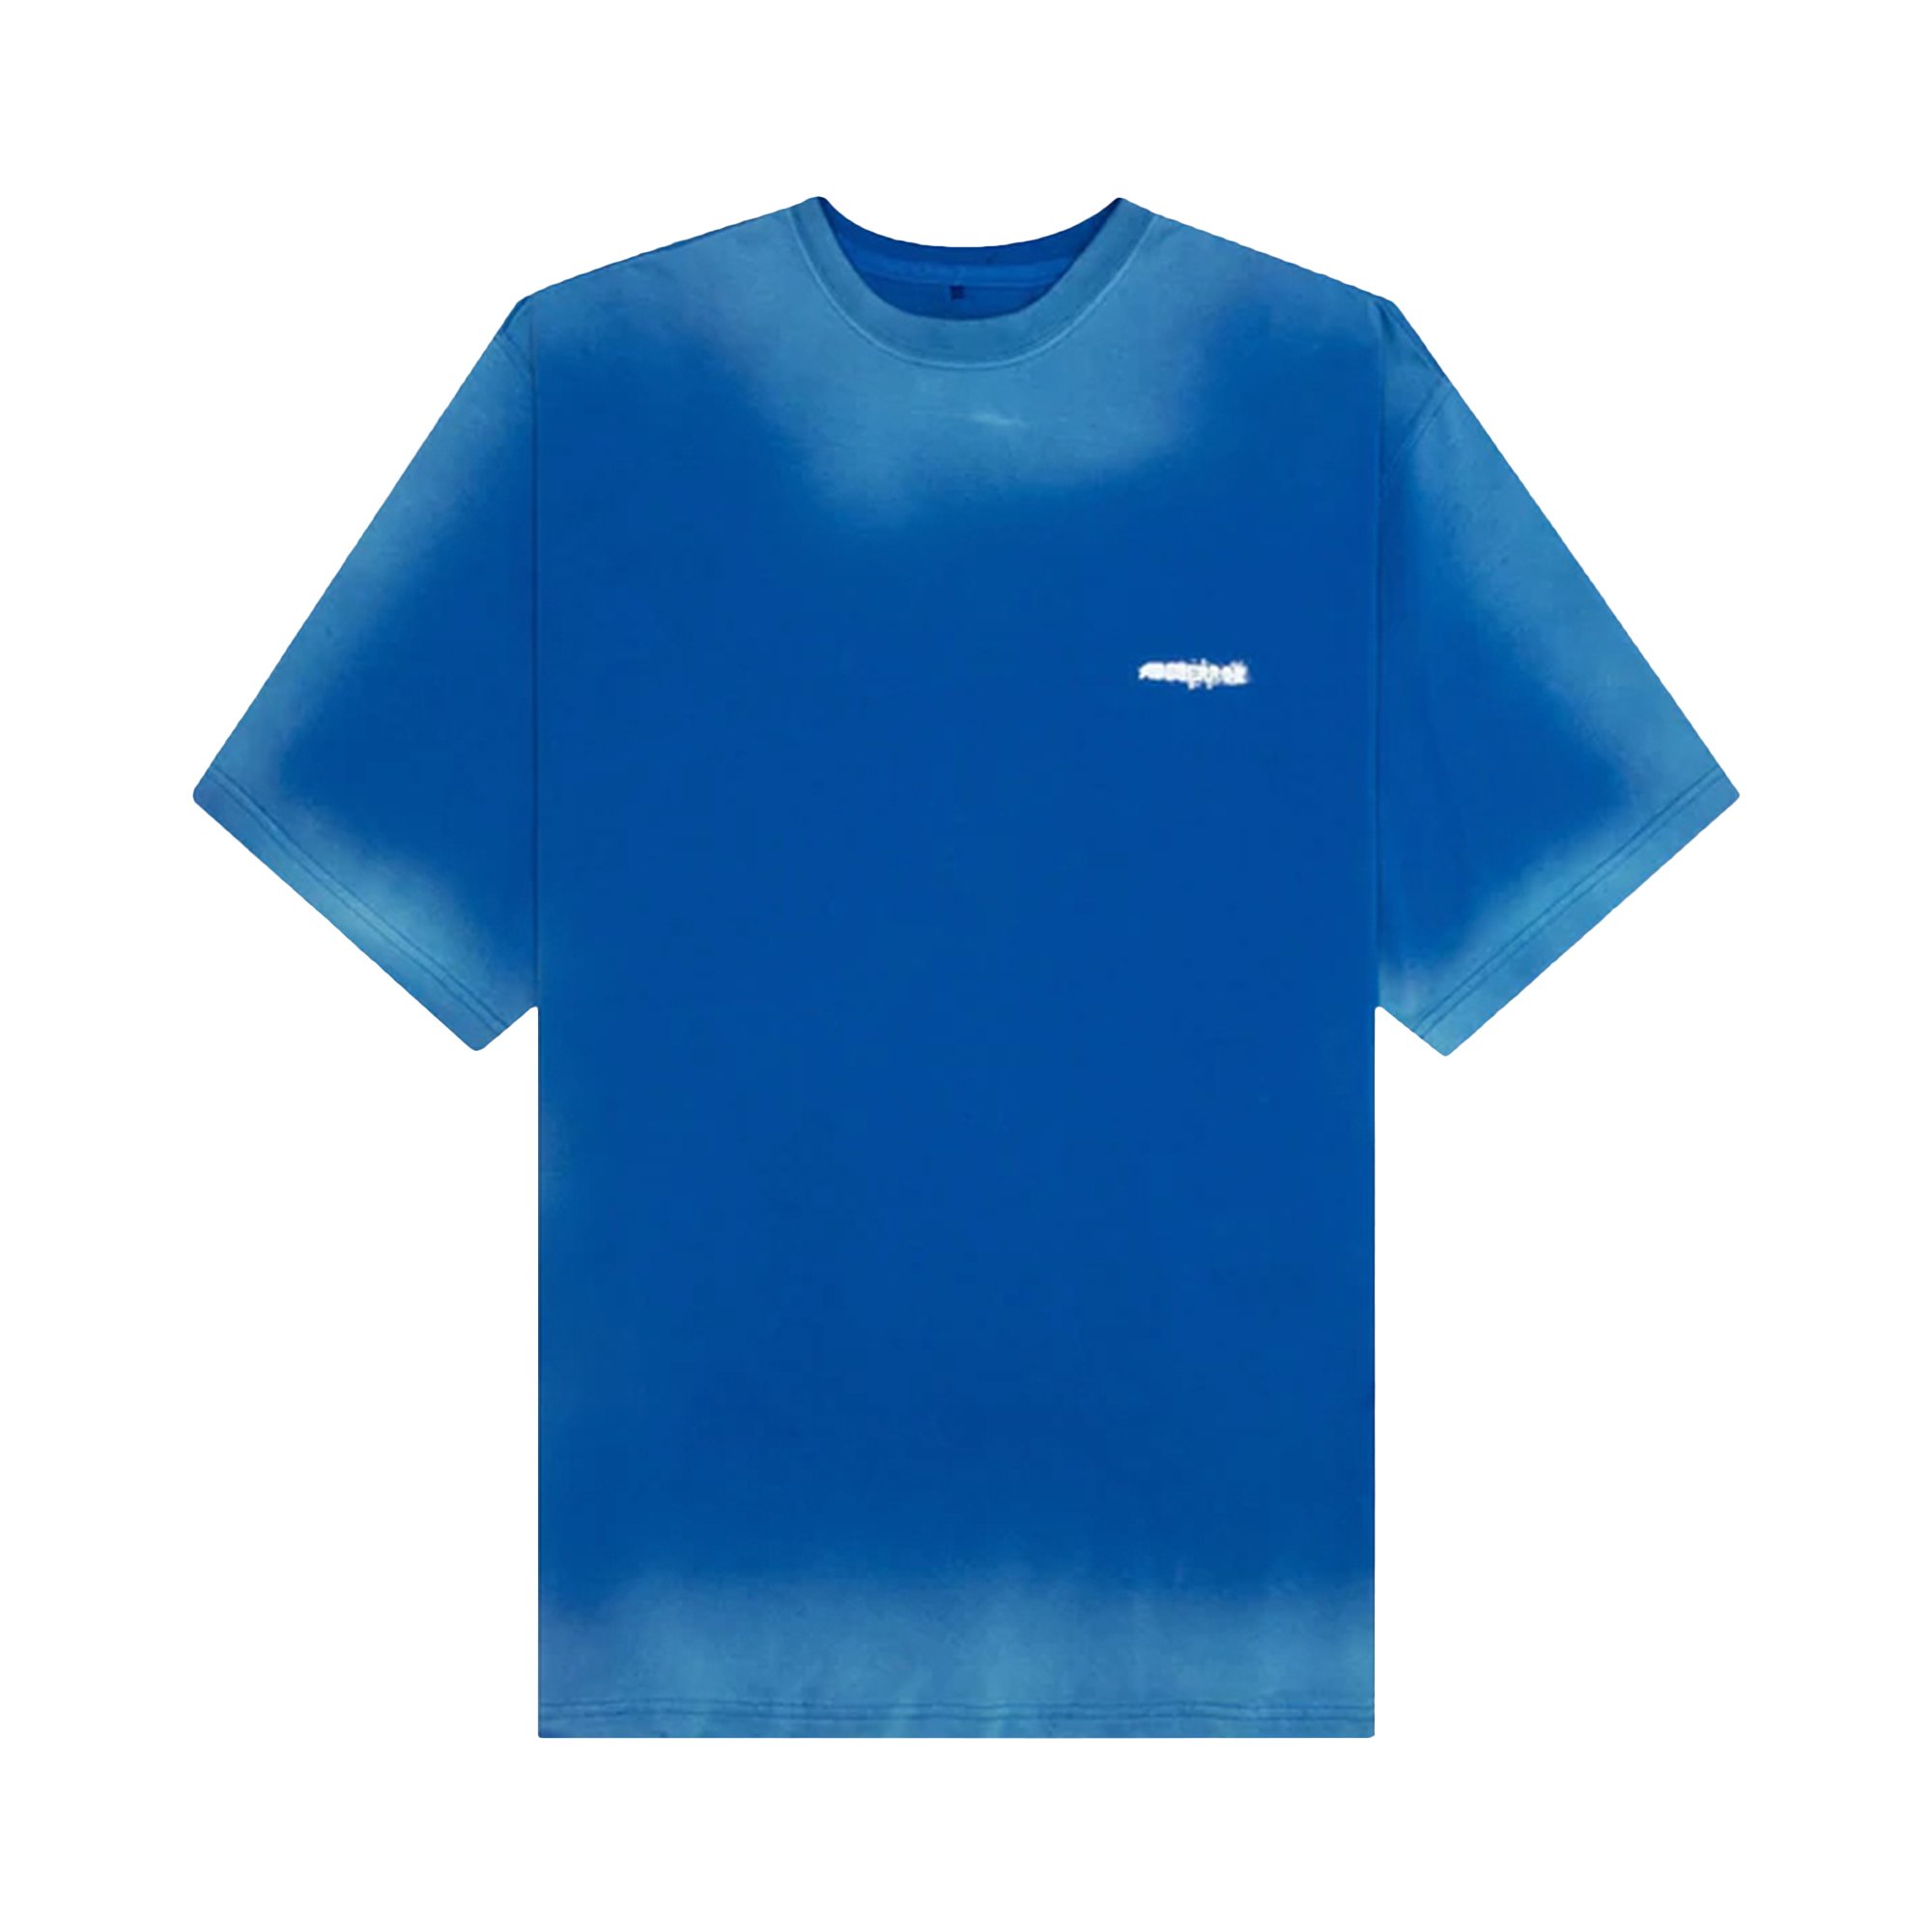 Buy Ader Error Border T-Shirt 'Blue' - BLASSHT01BL | GOAT